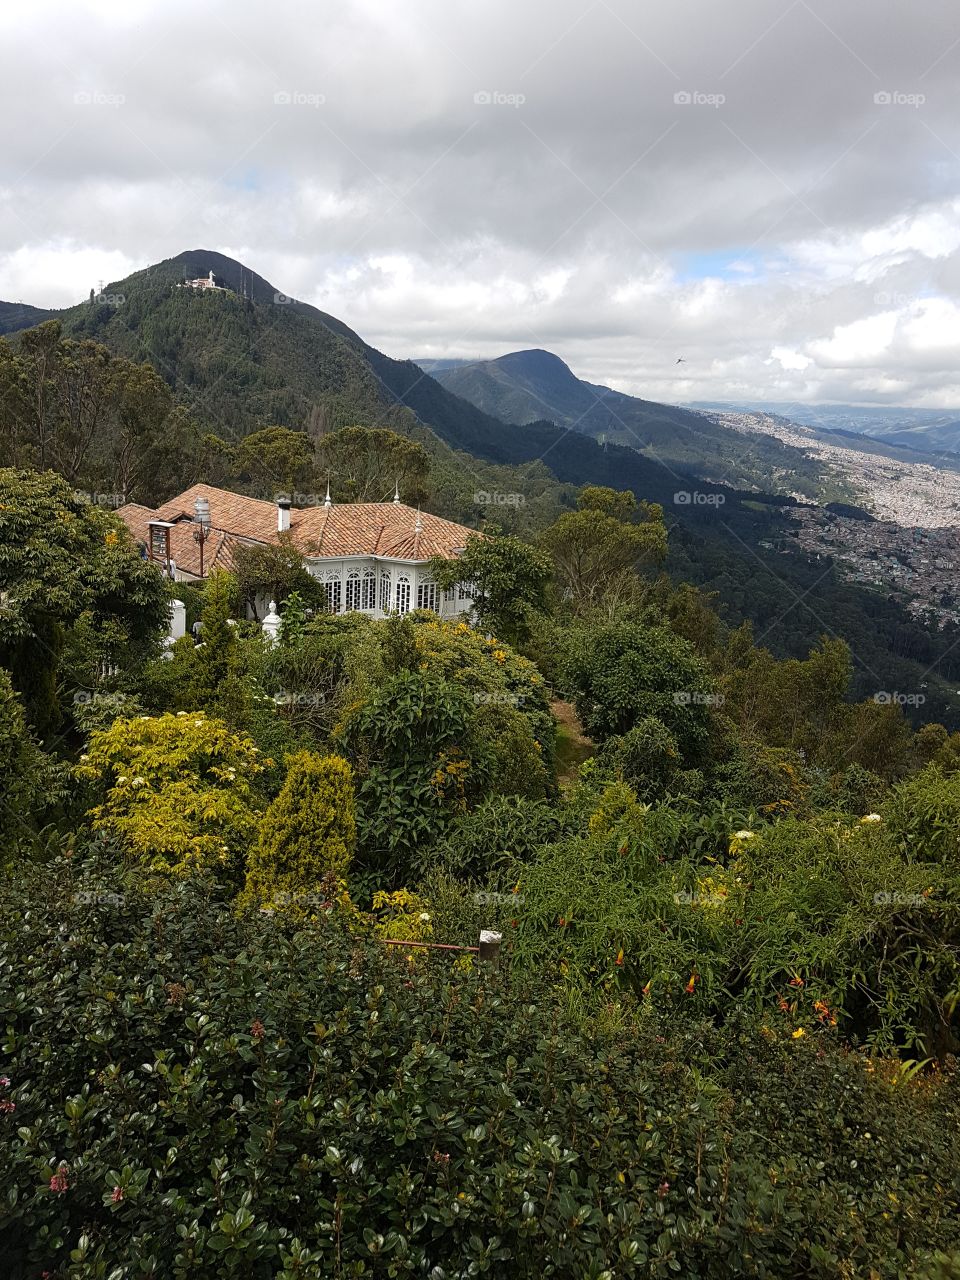 A view over Bogota